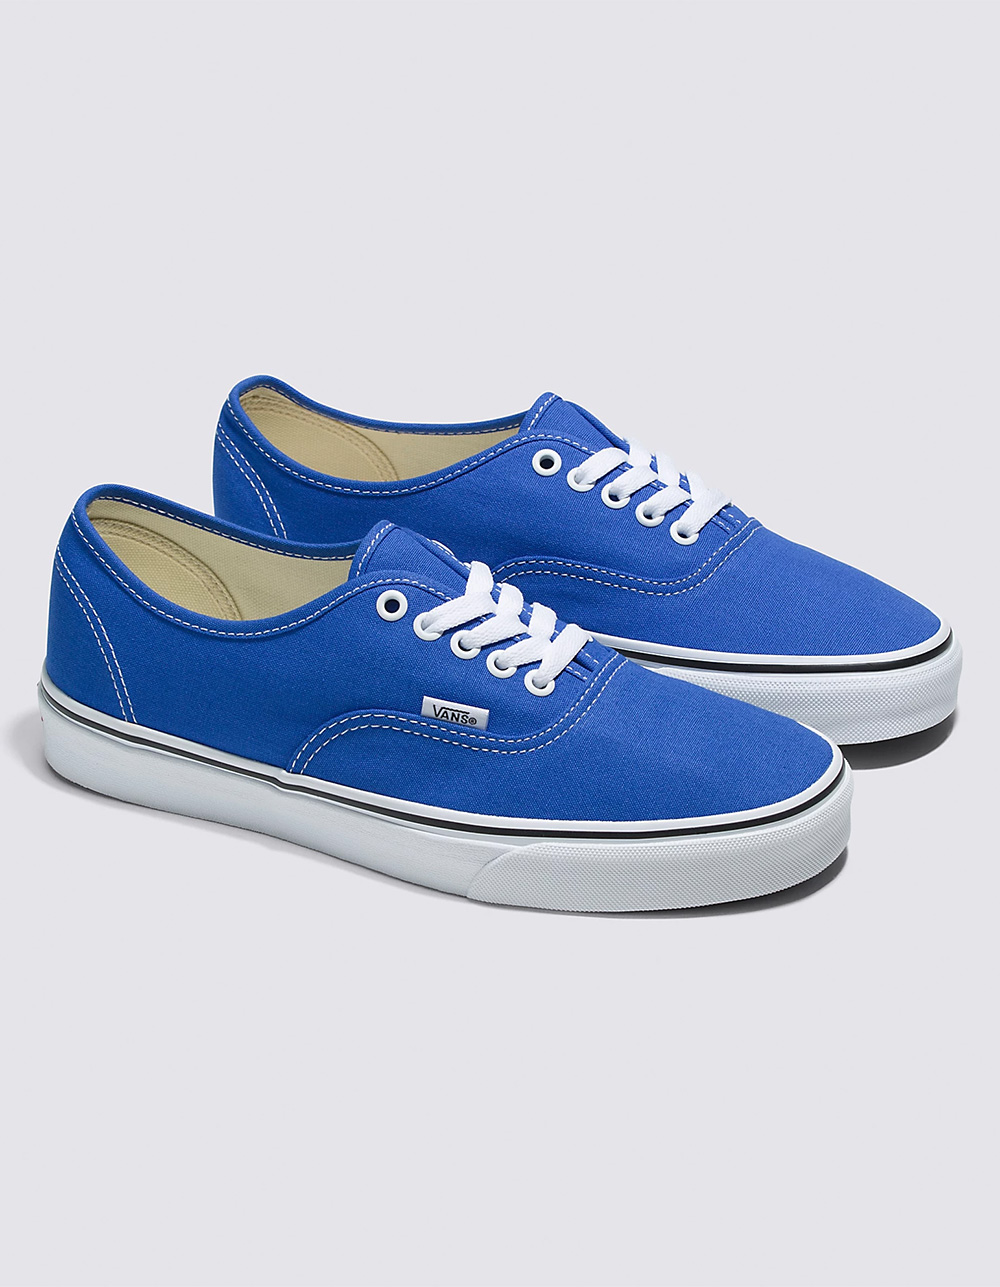 VANS Authentic Shoes BLUE/WHT | Tillys